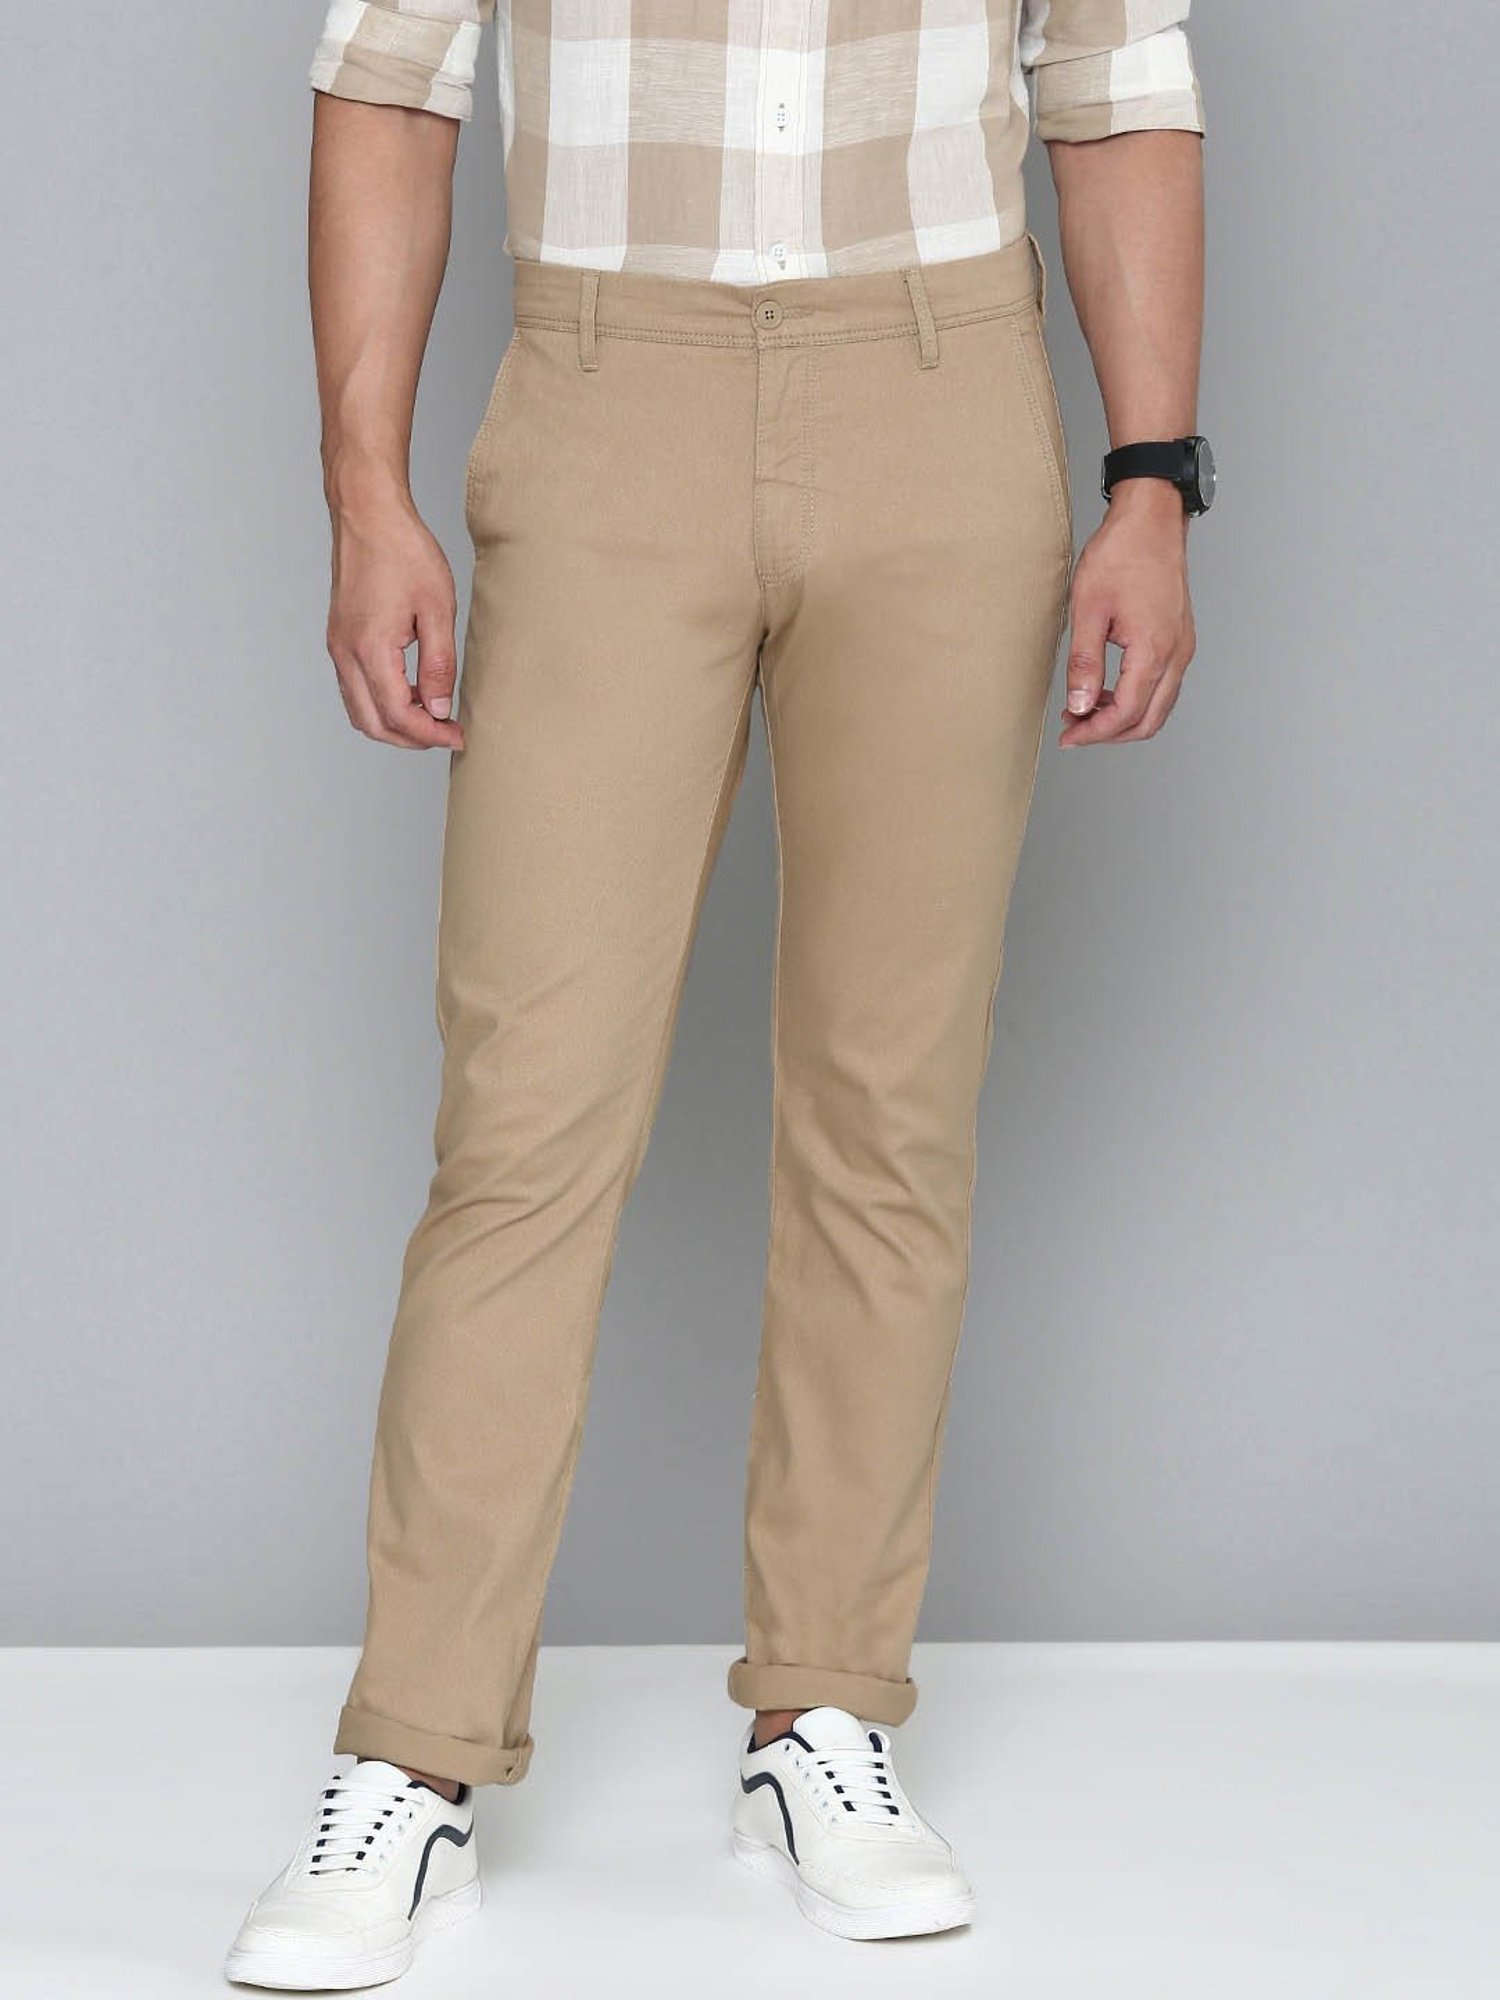 LEVIS 511 Slim Fit Men Beige Trousers  Buy LEVIS 511 Slim Fit Men Beige  Trousers Online at Best Prices in India  Flipkartcom